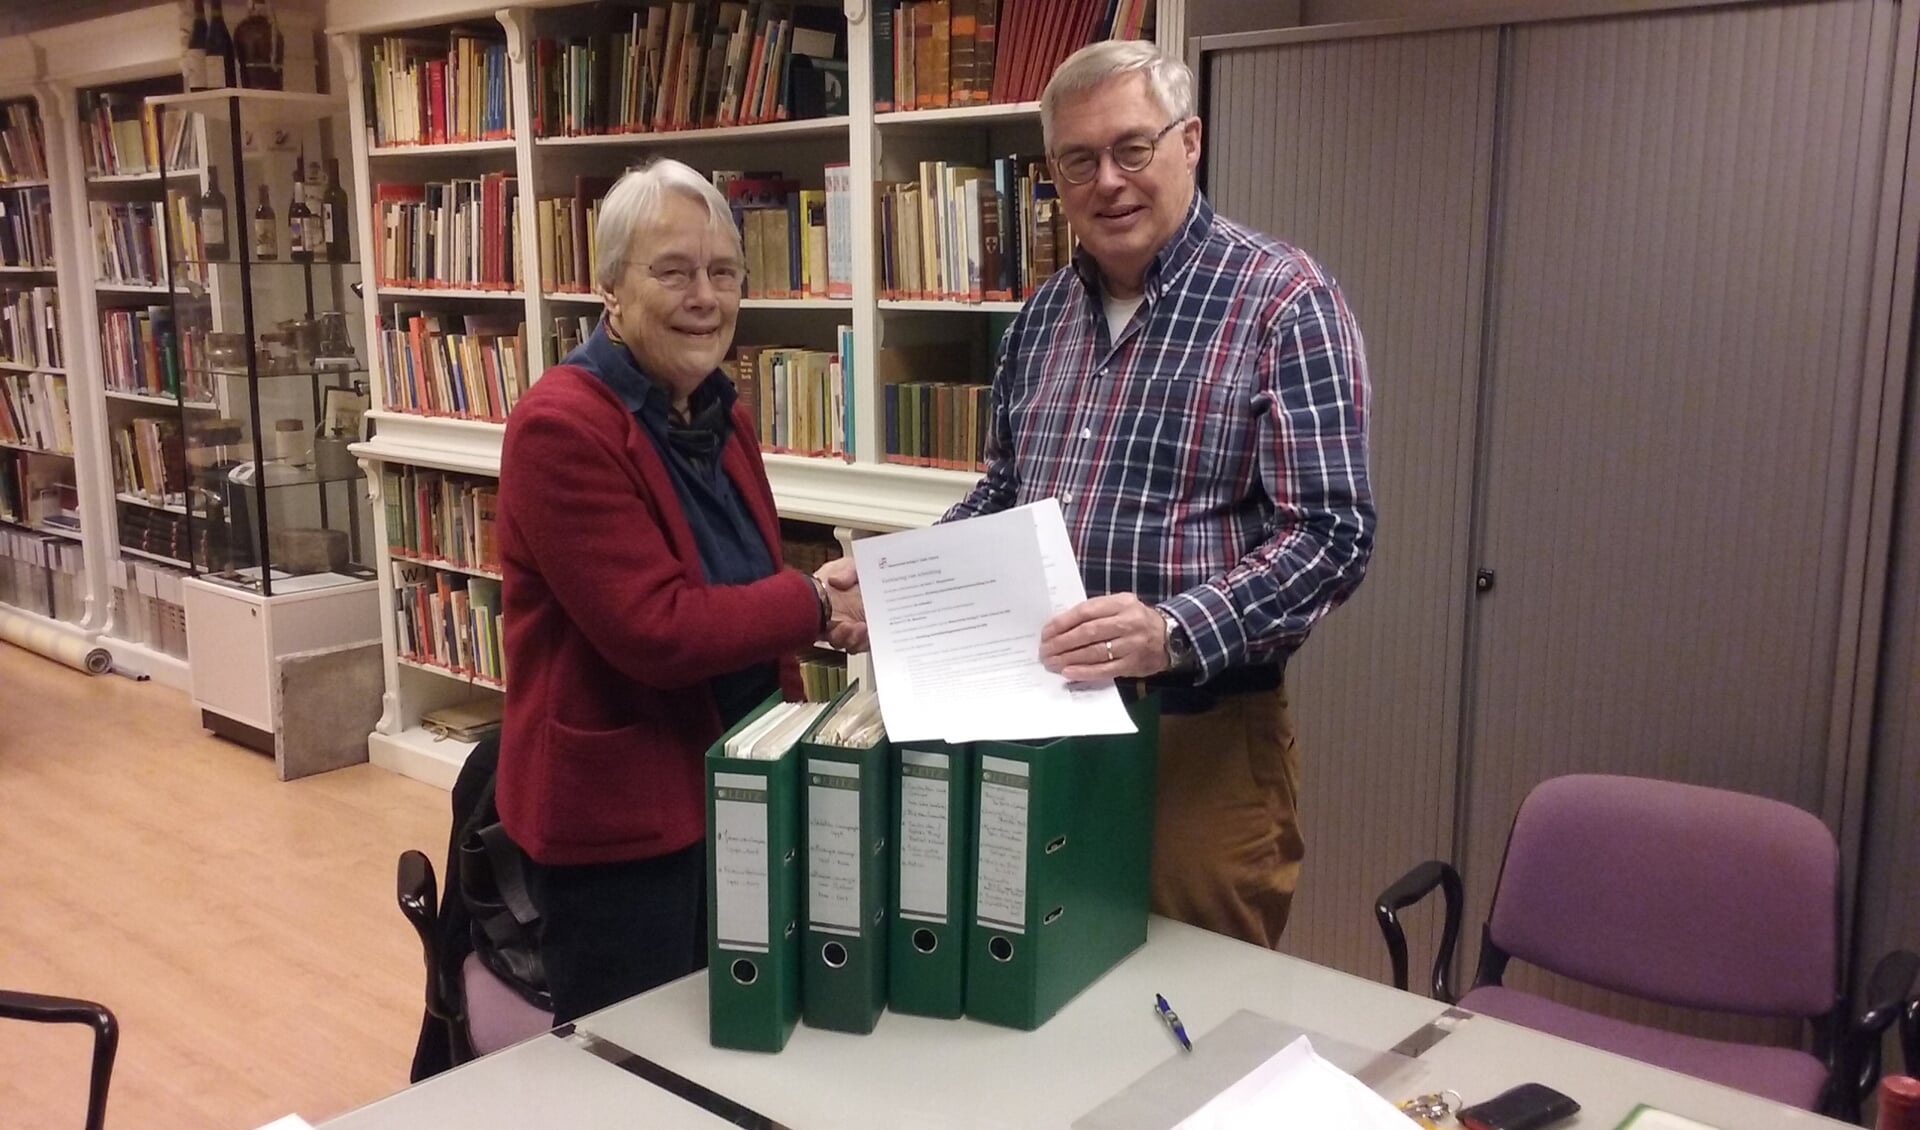  Fieke Faber overhandigt het archief aan Paul Meuwese van de Historische Kring.